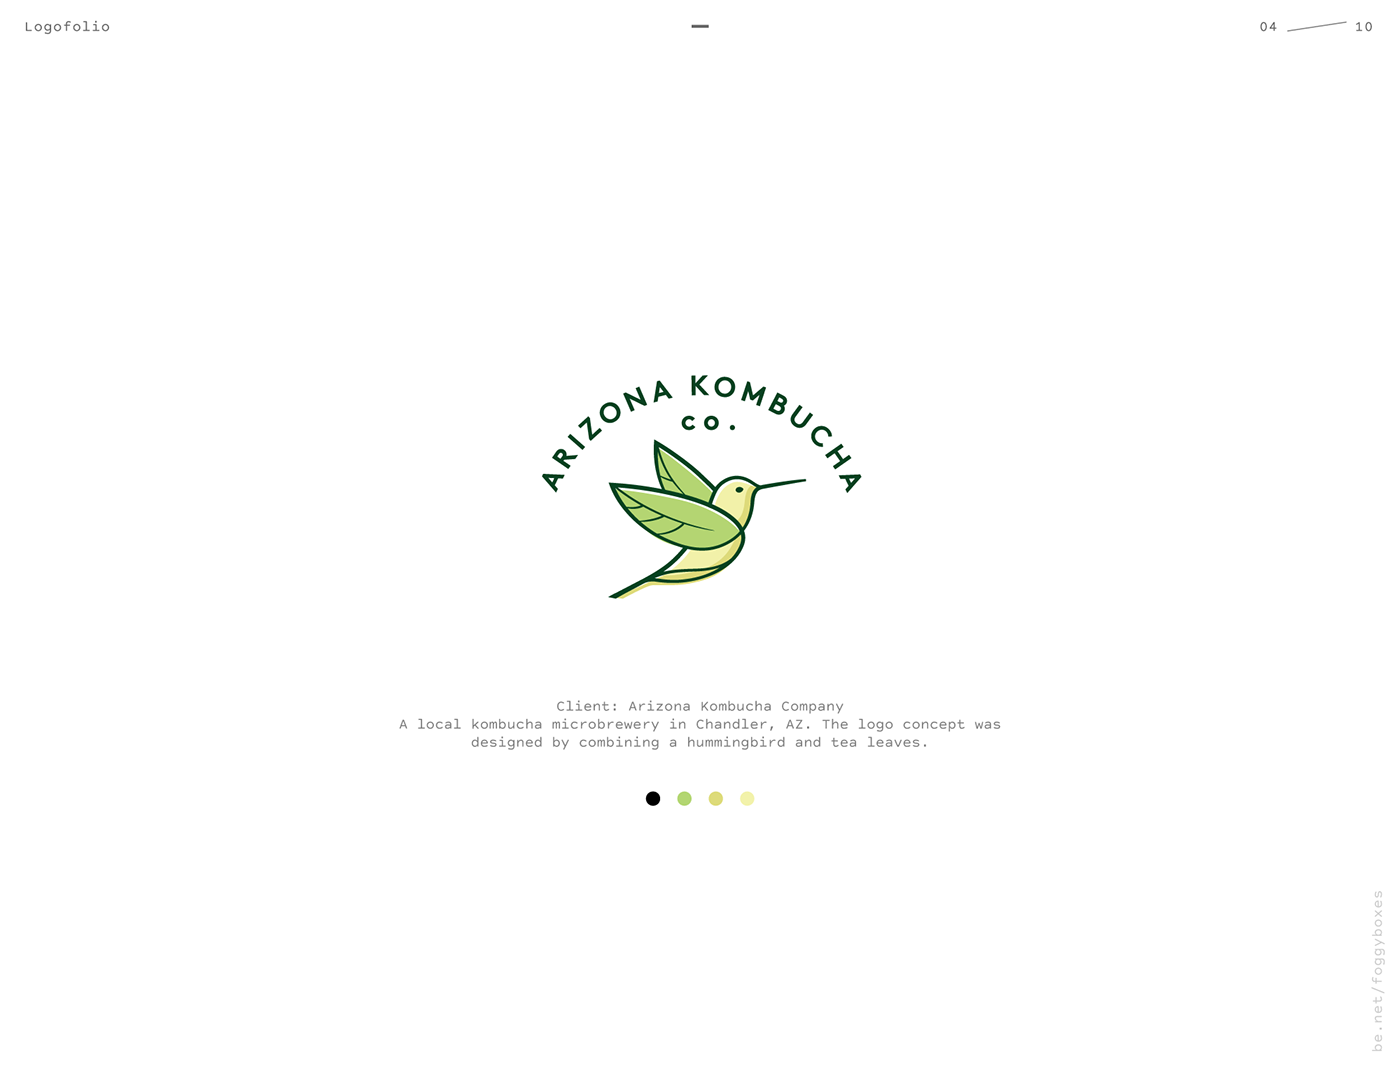 Arizona Kombucha Co. Logo